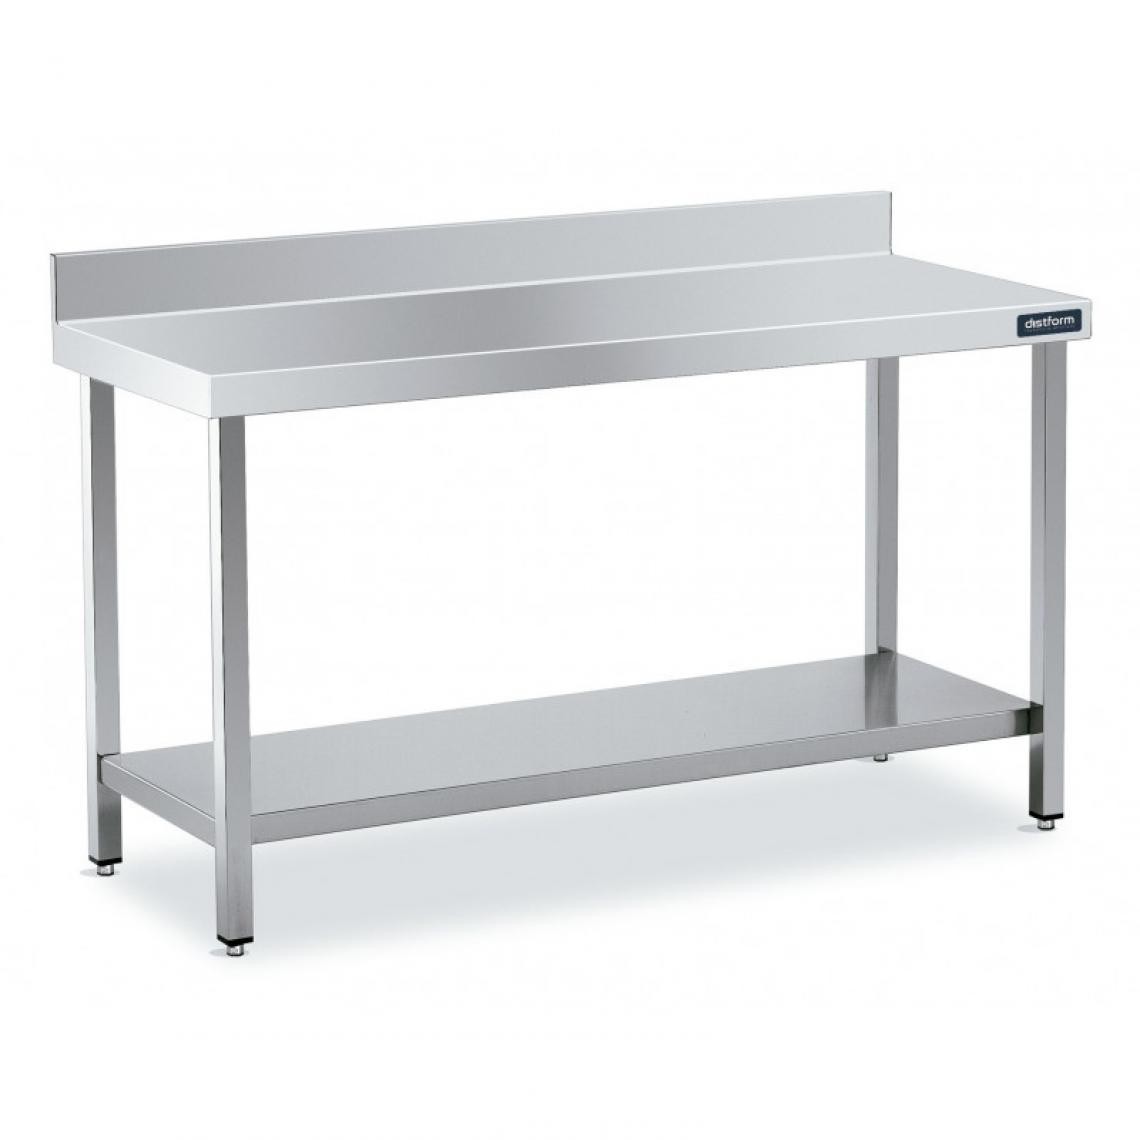 DISTFORM - Table Inox de Travail Adossée avec Étagère - Gamme 500 - Distform - Acier inoxydable2400x500 - Tables à manger